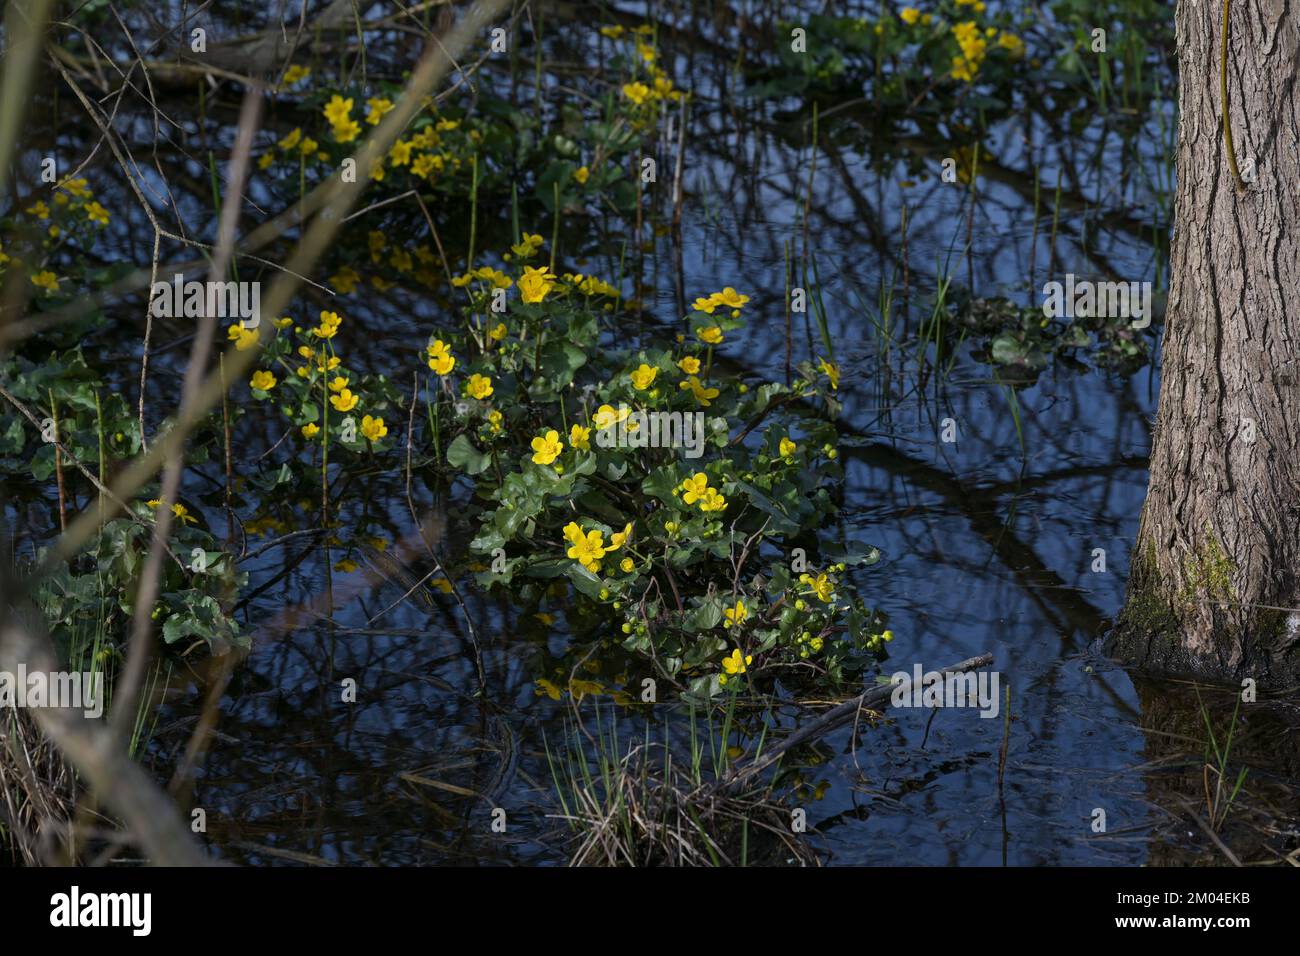 Paludi in fiore (Caltha palustris) con fiori gialli in primavera, acqua blu scuro in un lago forestale, bellezza nella natura, protezione ambientale Foto Stock